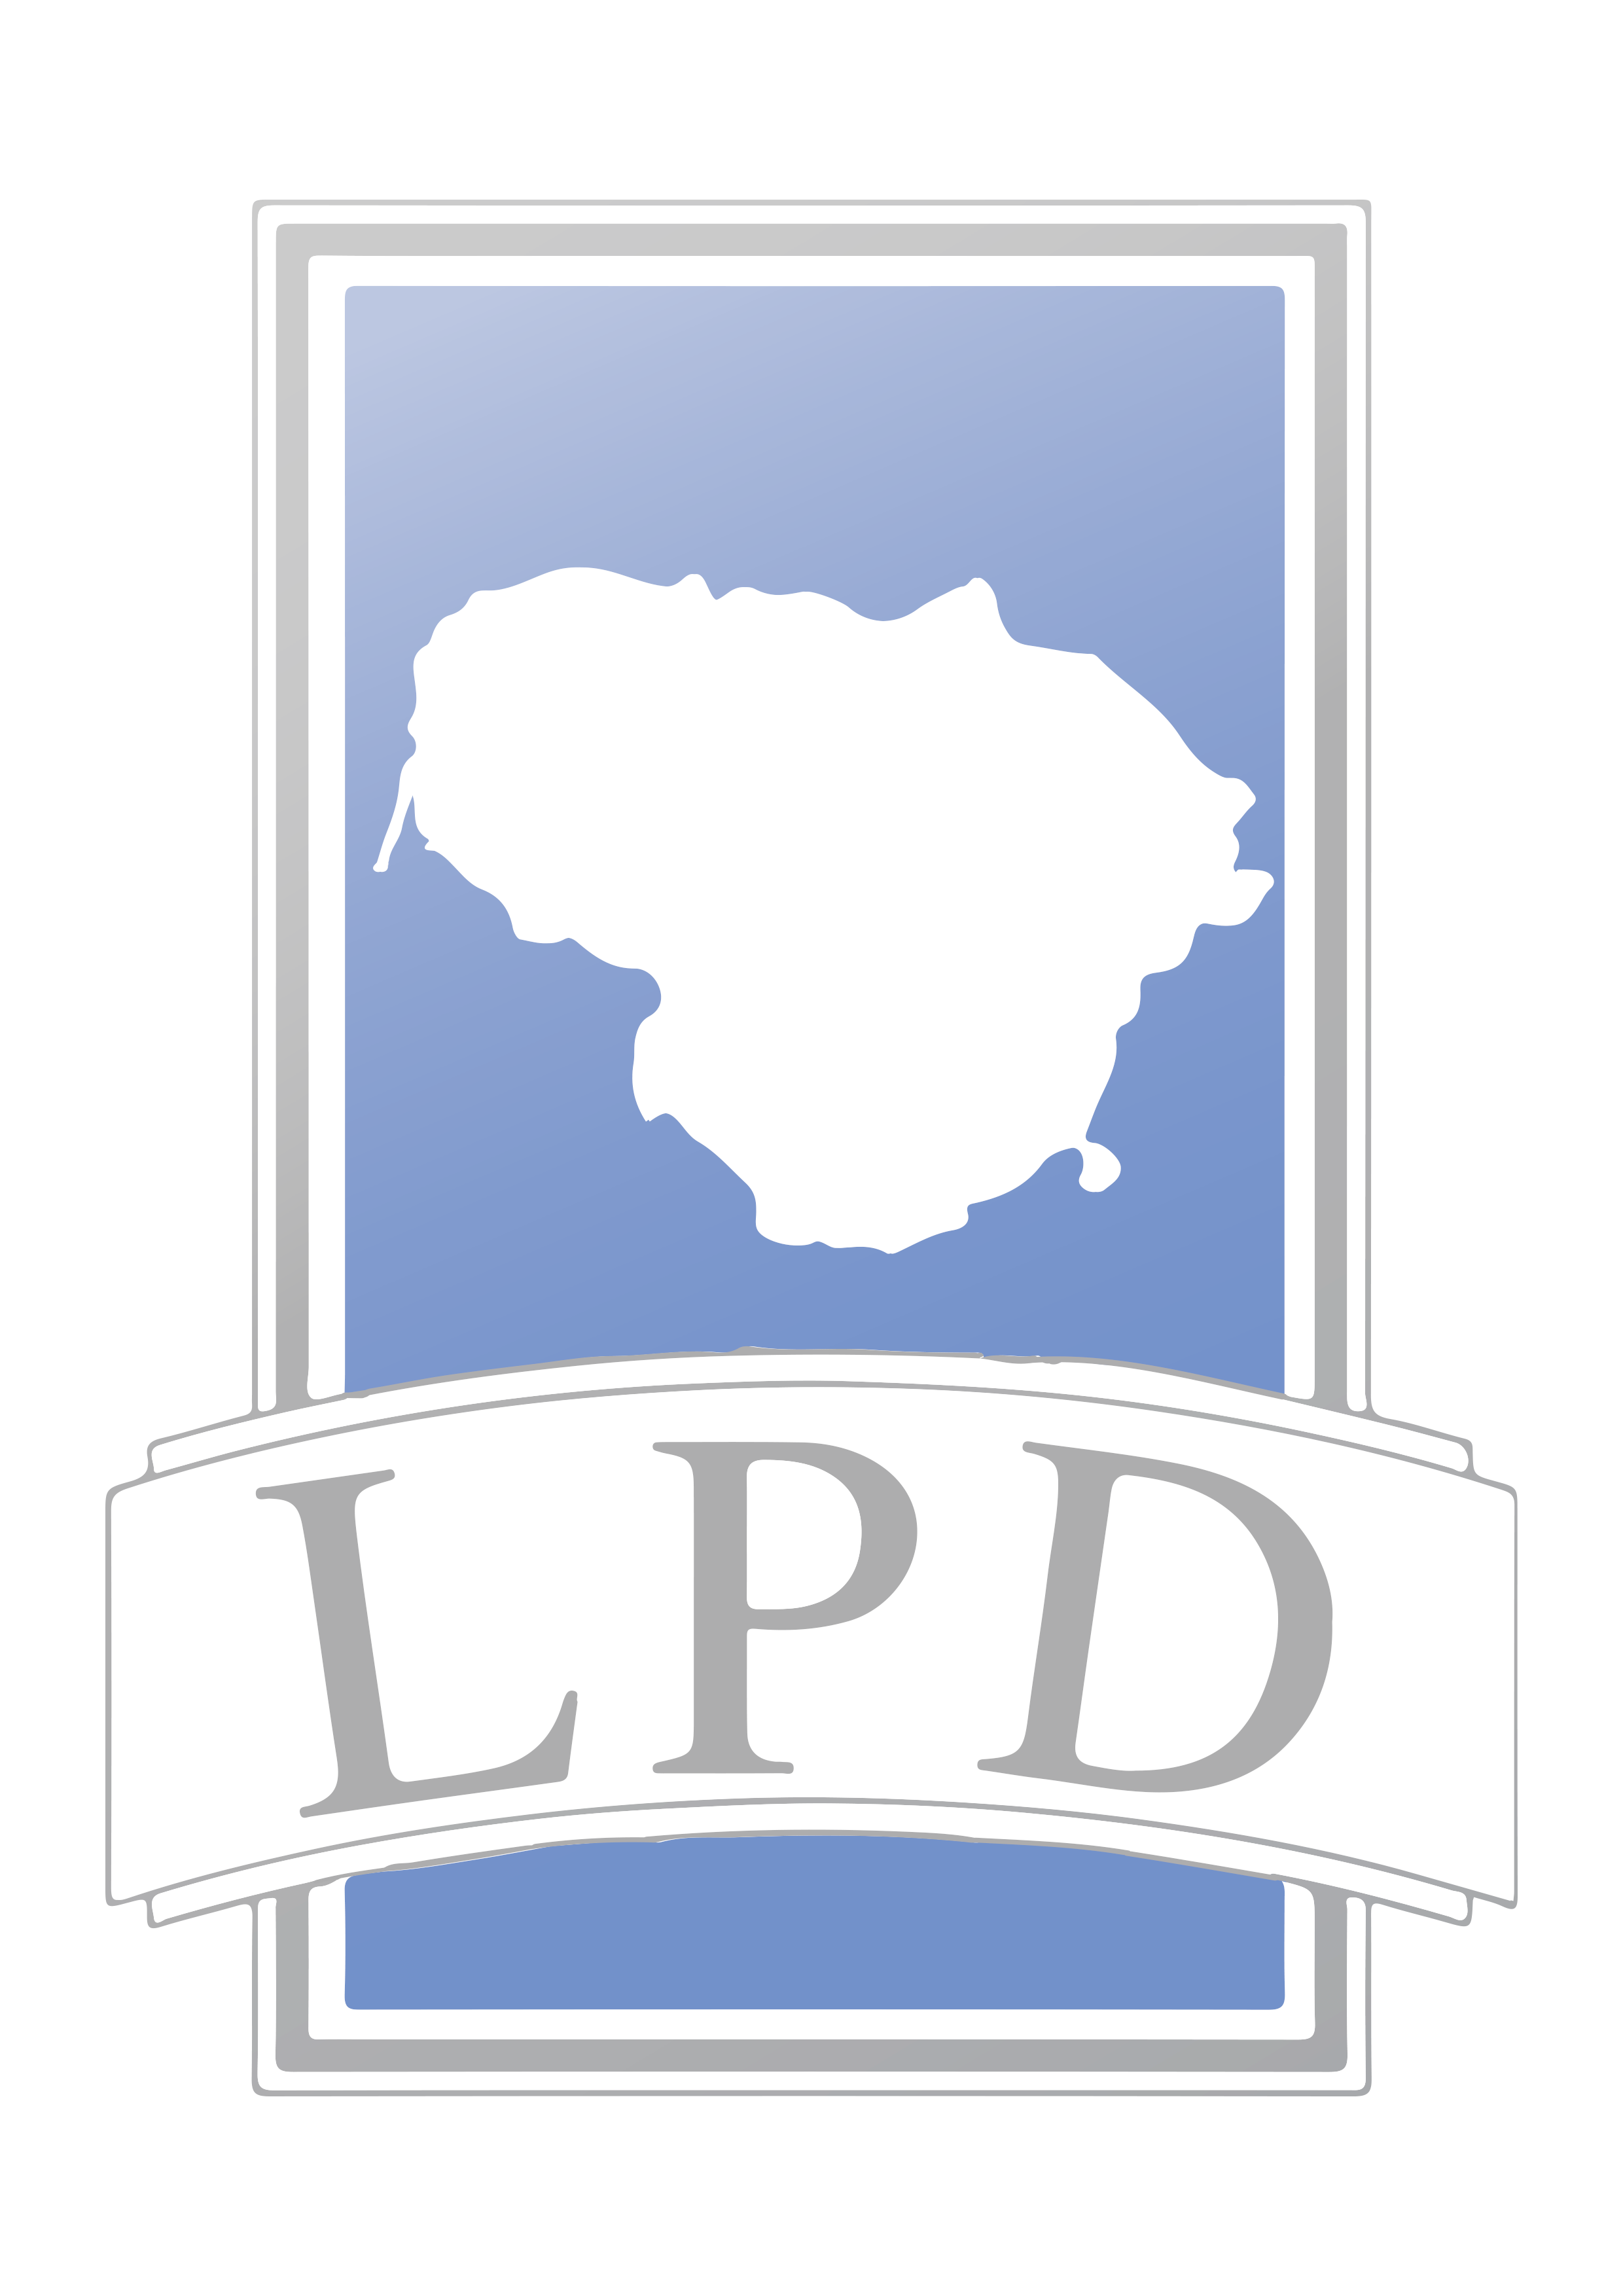 LPD - Lietuvos Psichoterapijos Draugija